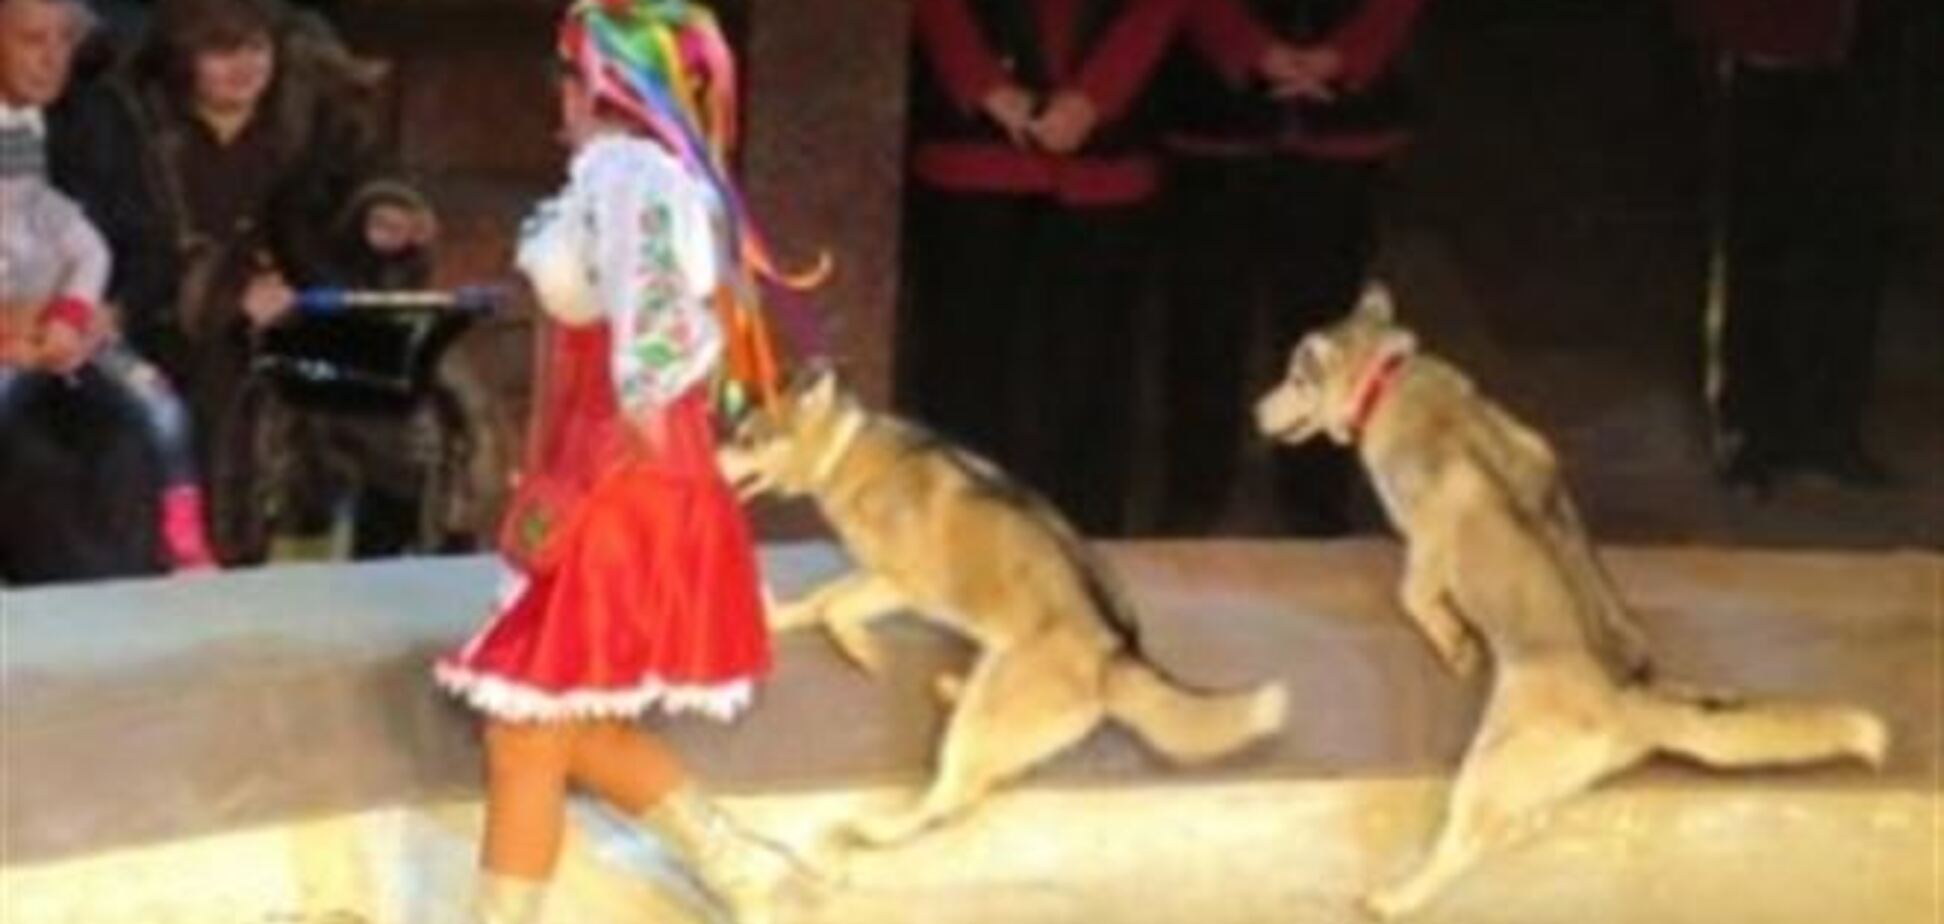 ЧП в самарском цирке: огромный волк бросился в зал и покусал зрителя